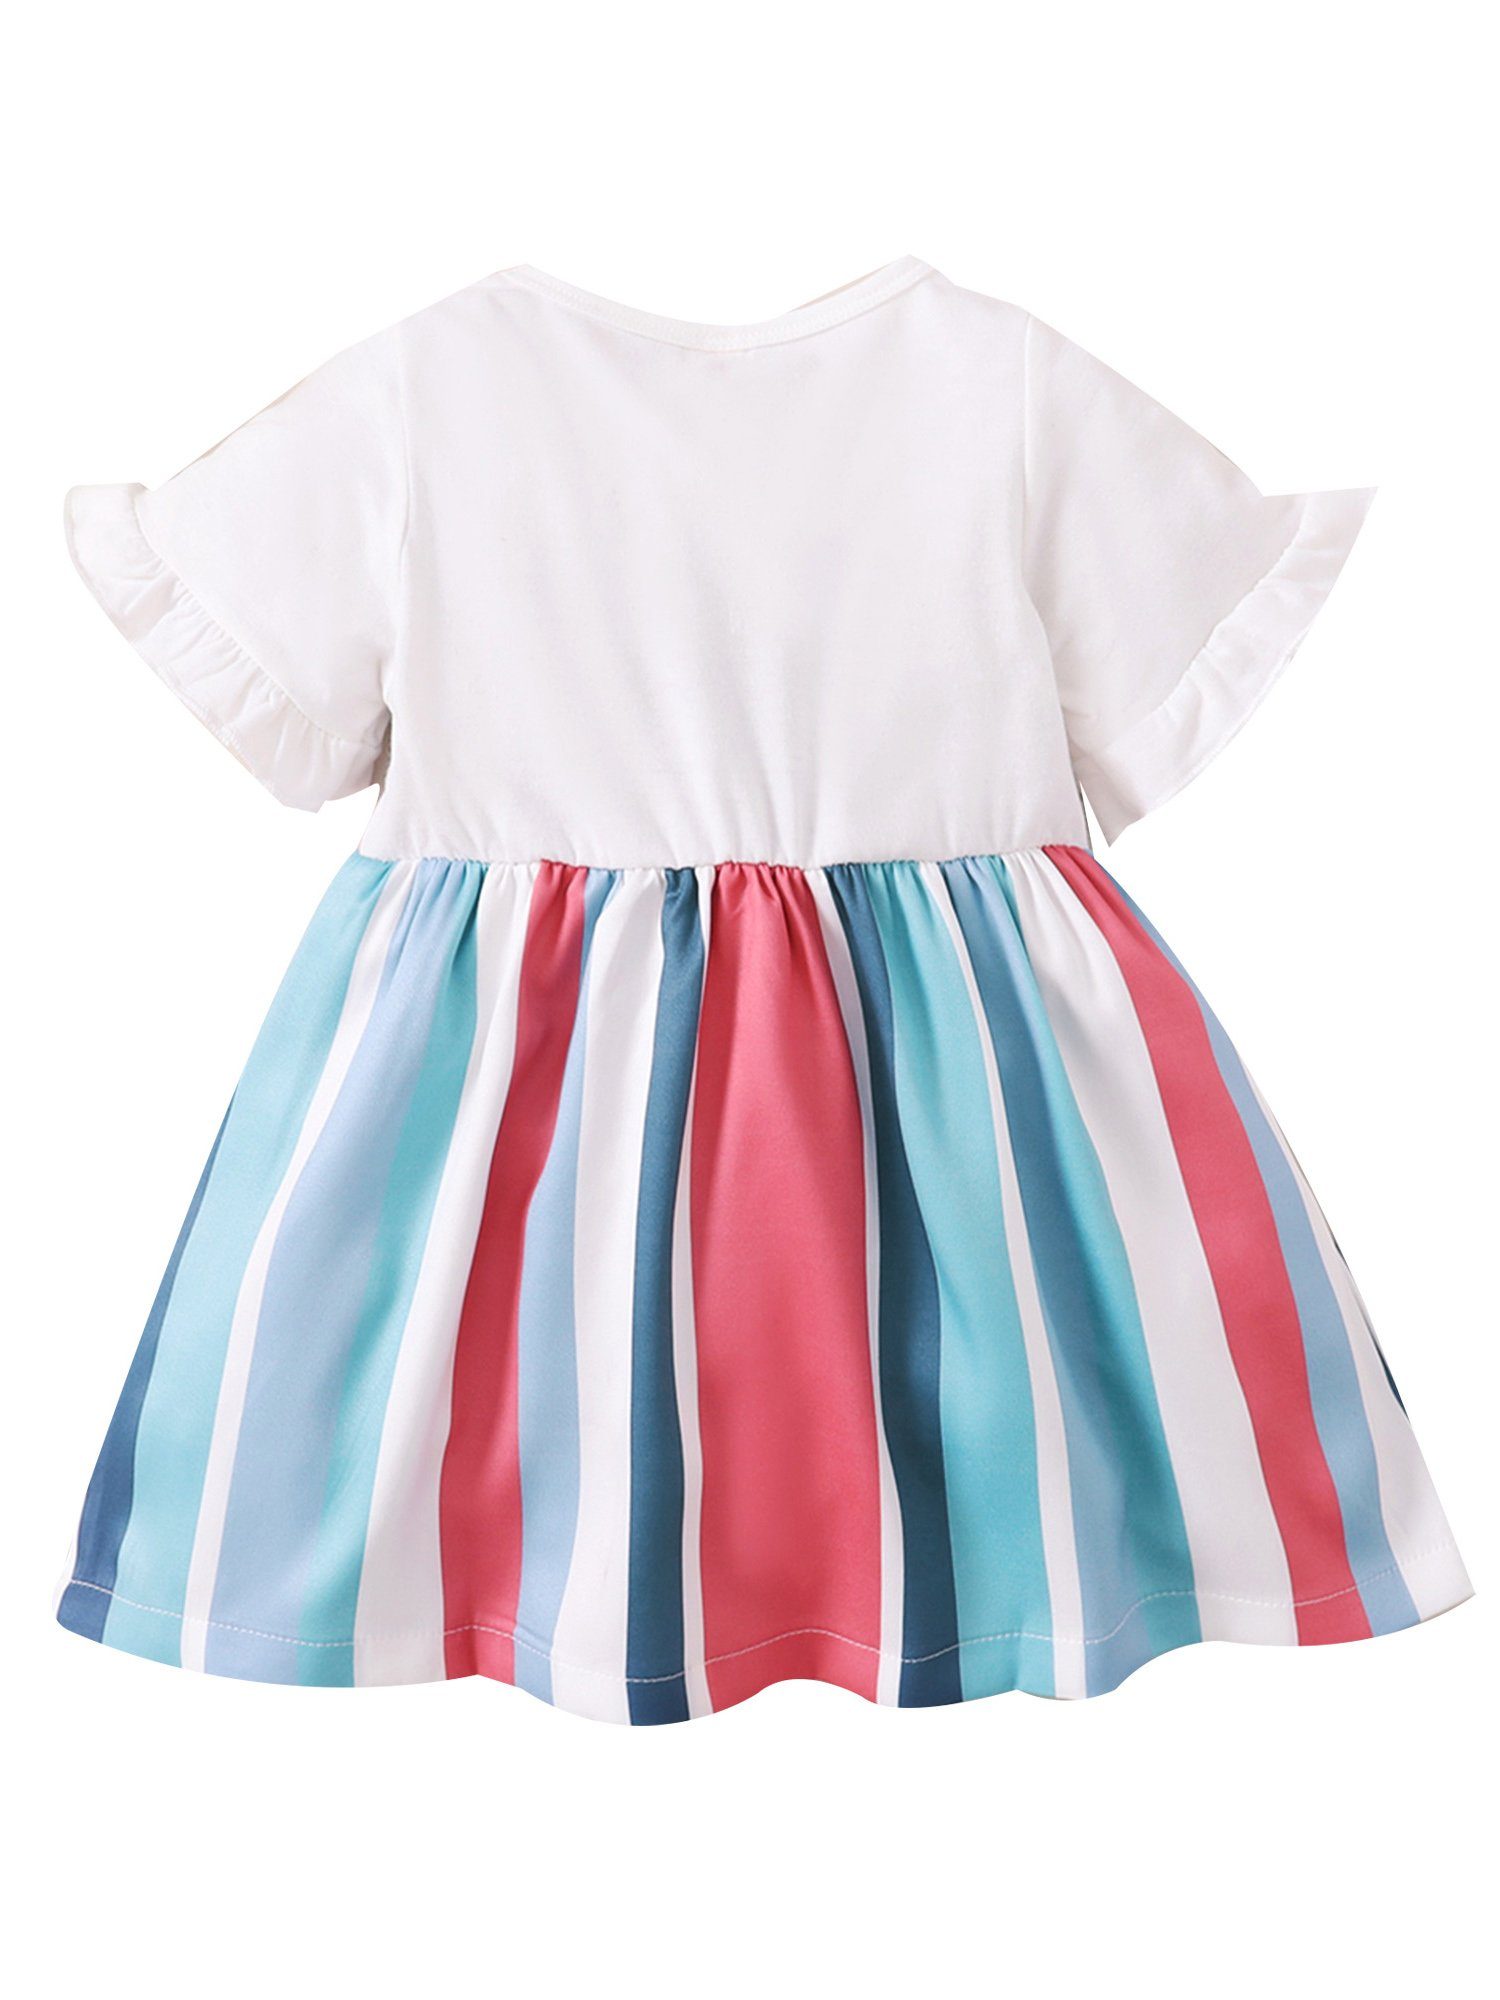 Kinder Kleider LAPA Minikleid LAPA Baby Mädchen Streifen Blumendruck Kleid